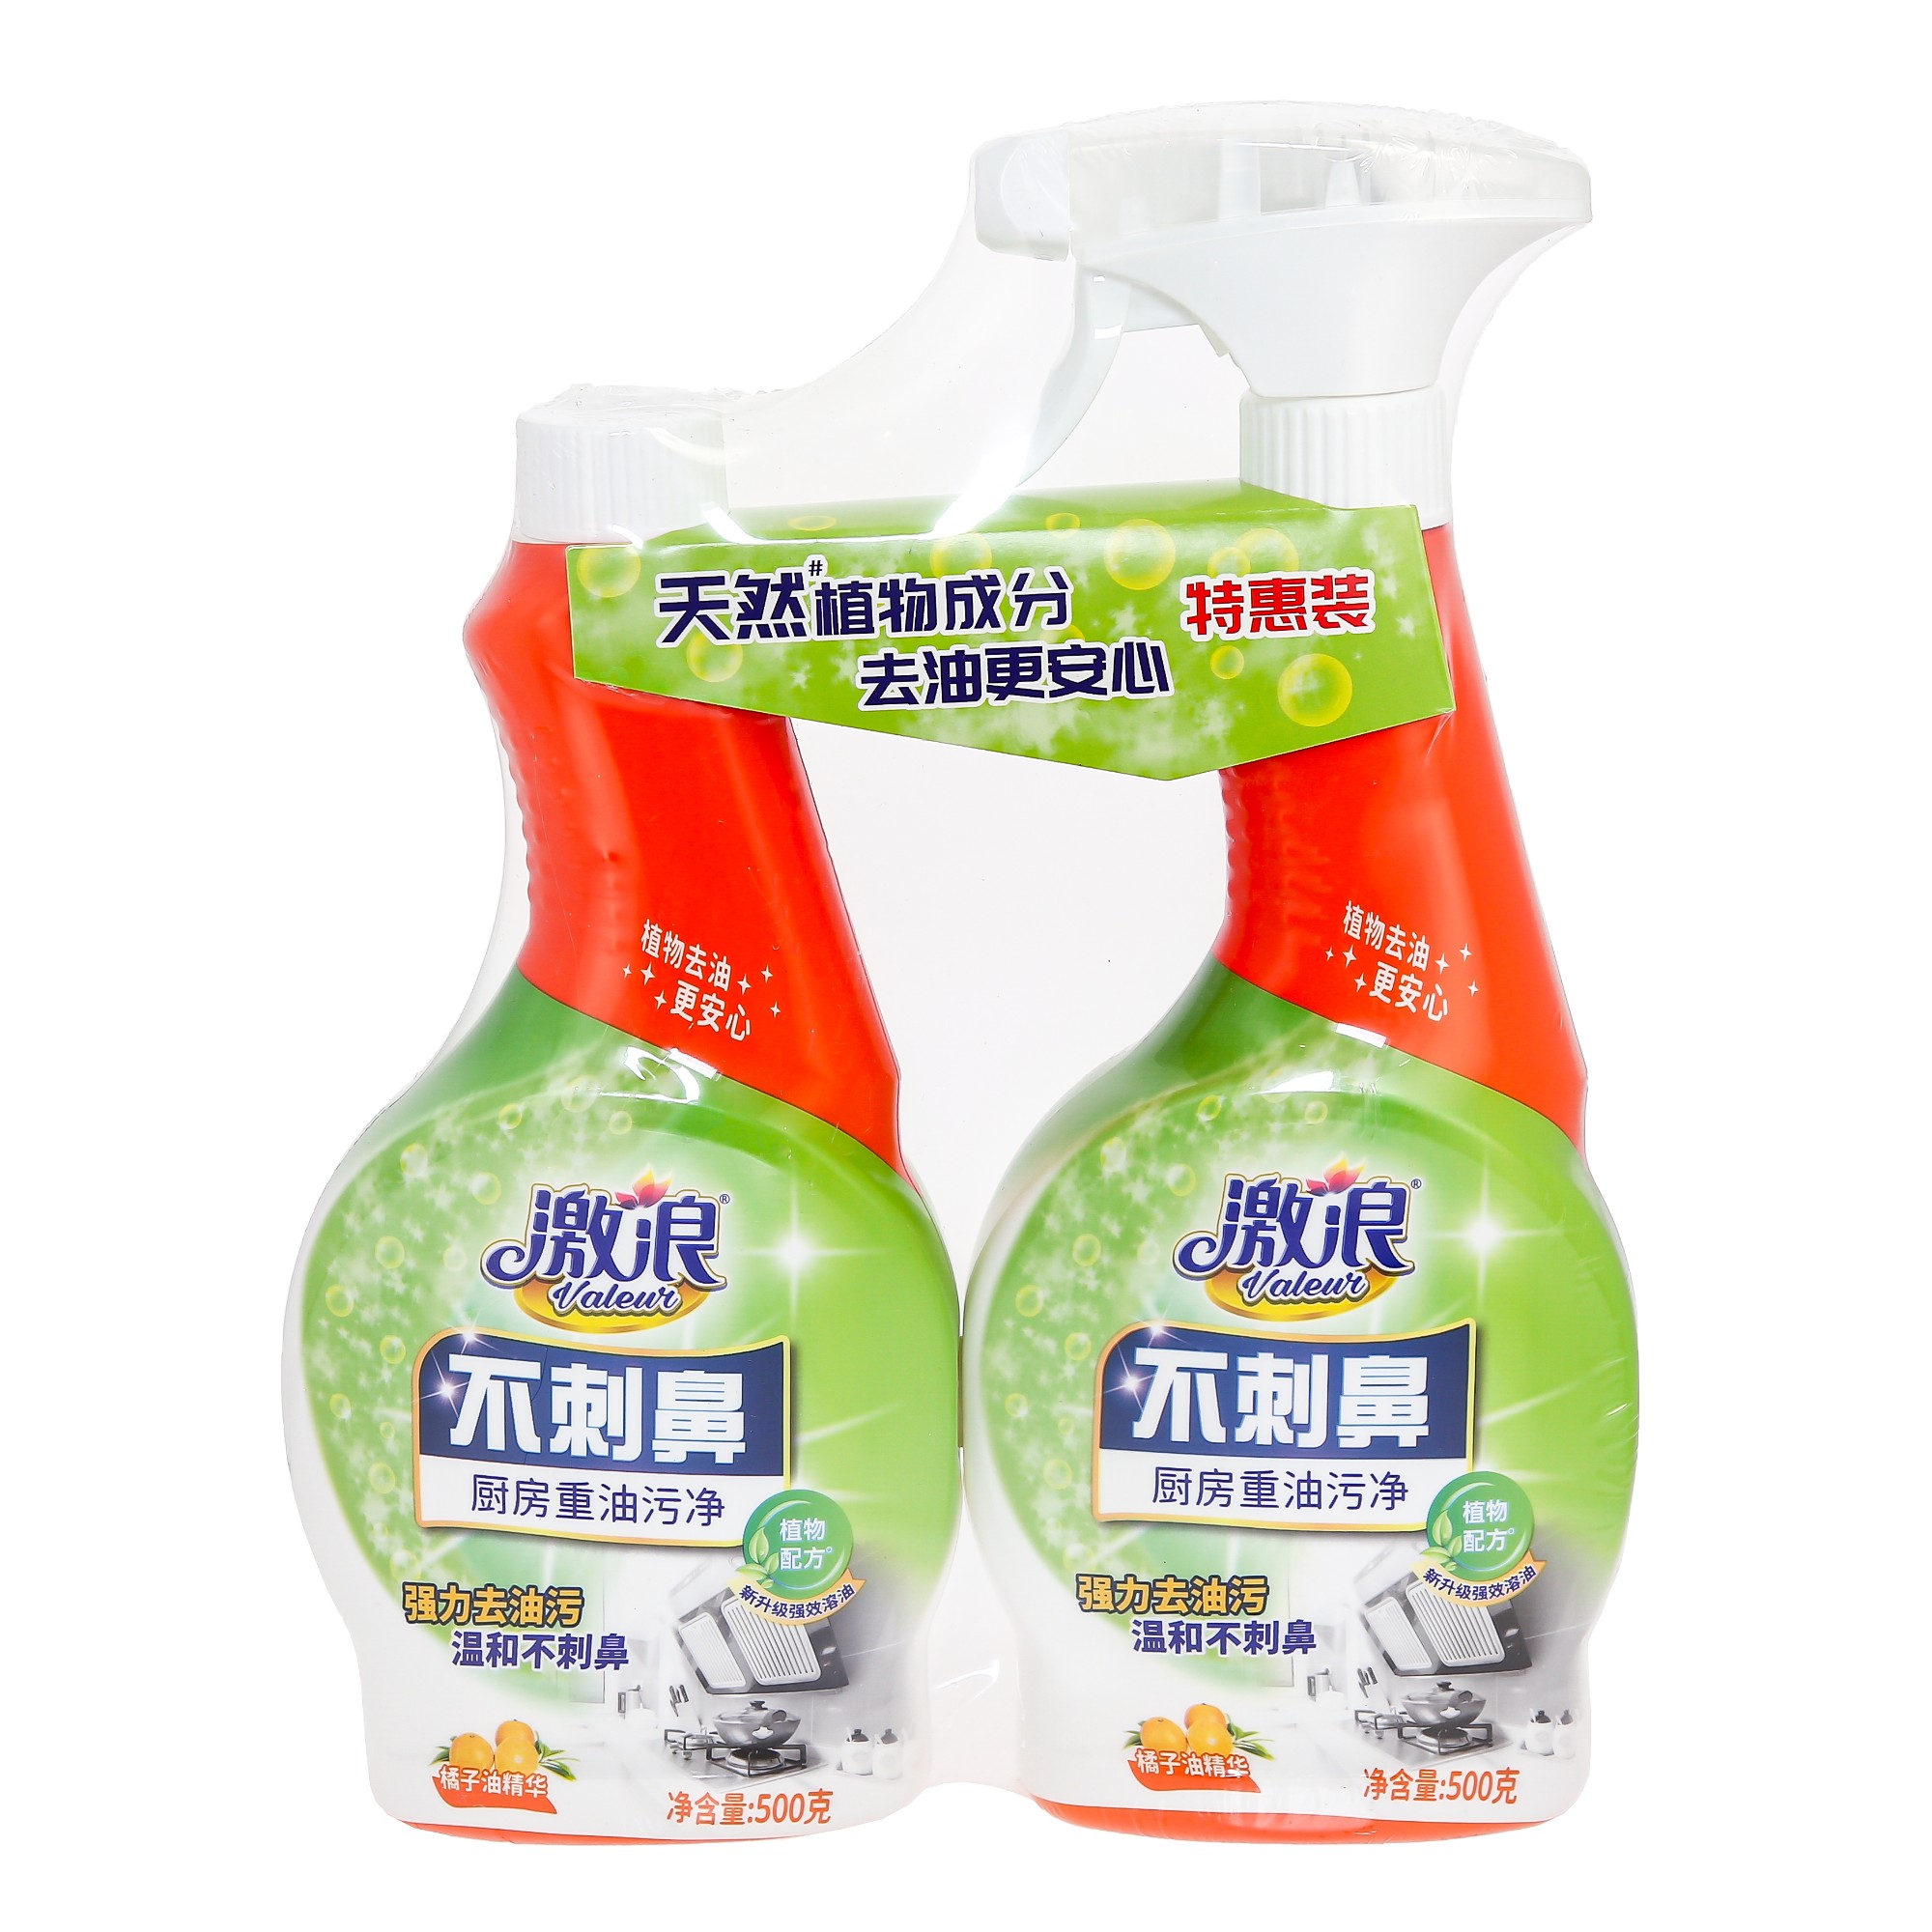 Чистящее средство для кухни Valeur с антибактериальным эффектом апельсин 1+1 500 гр средство grass universal cleaner чистящее универсальное 600 мл